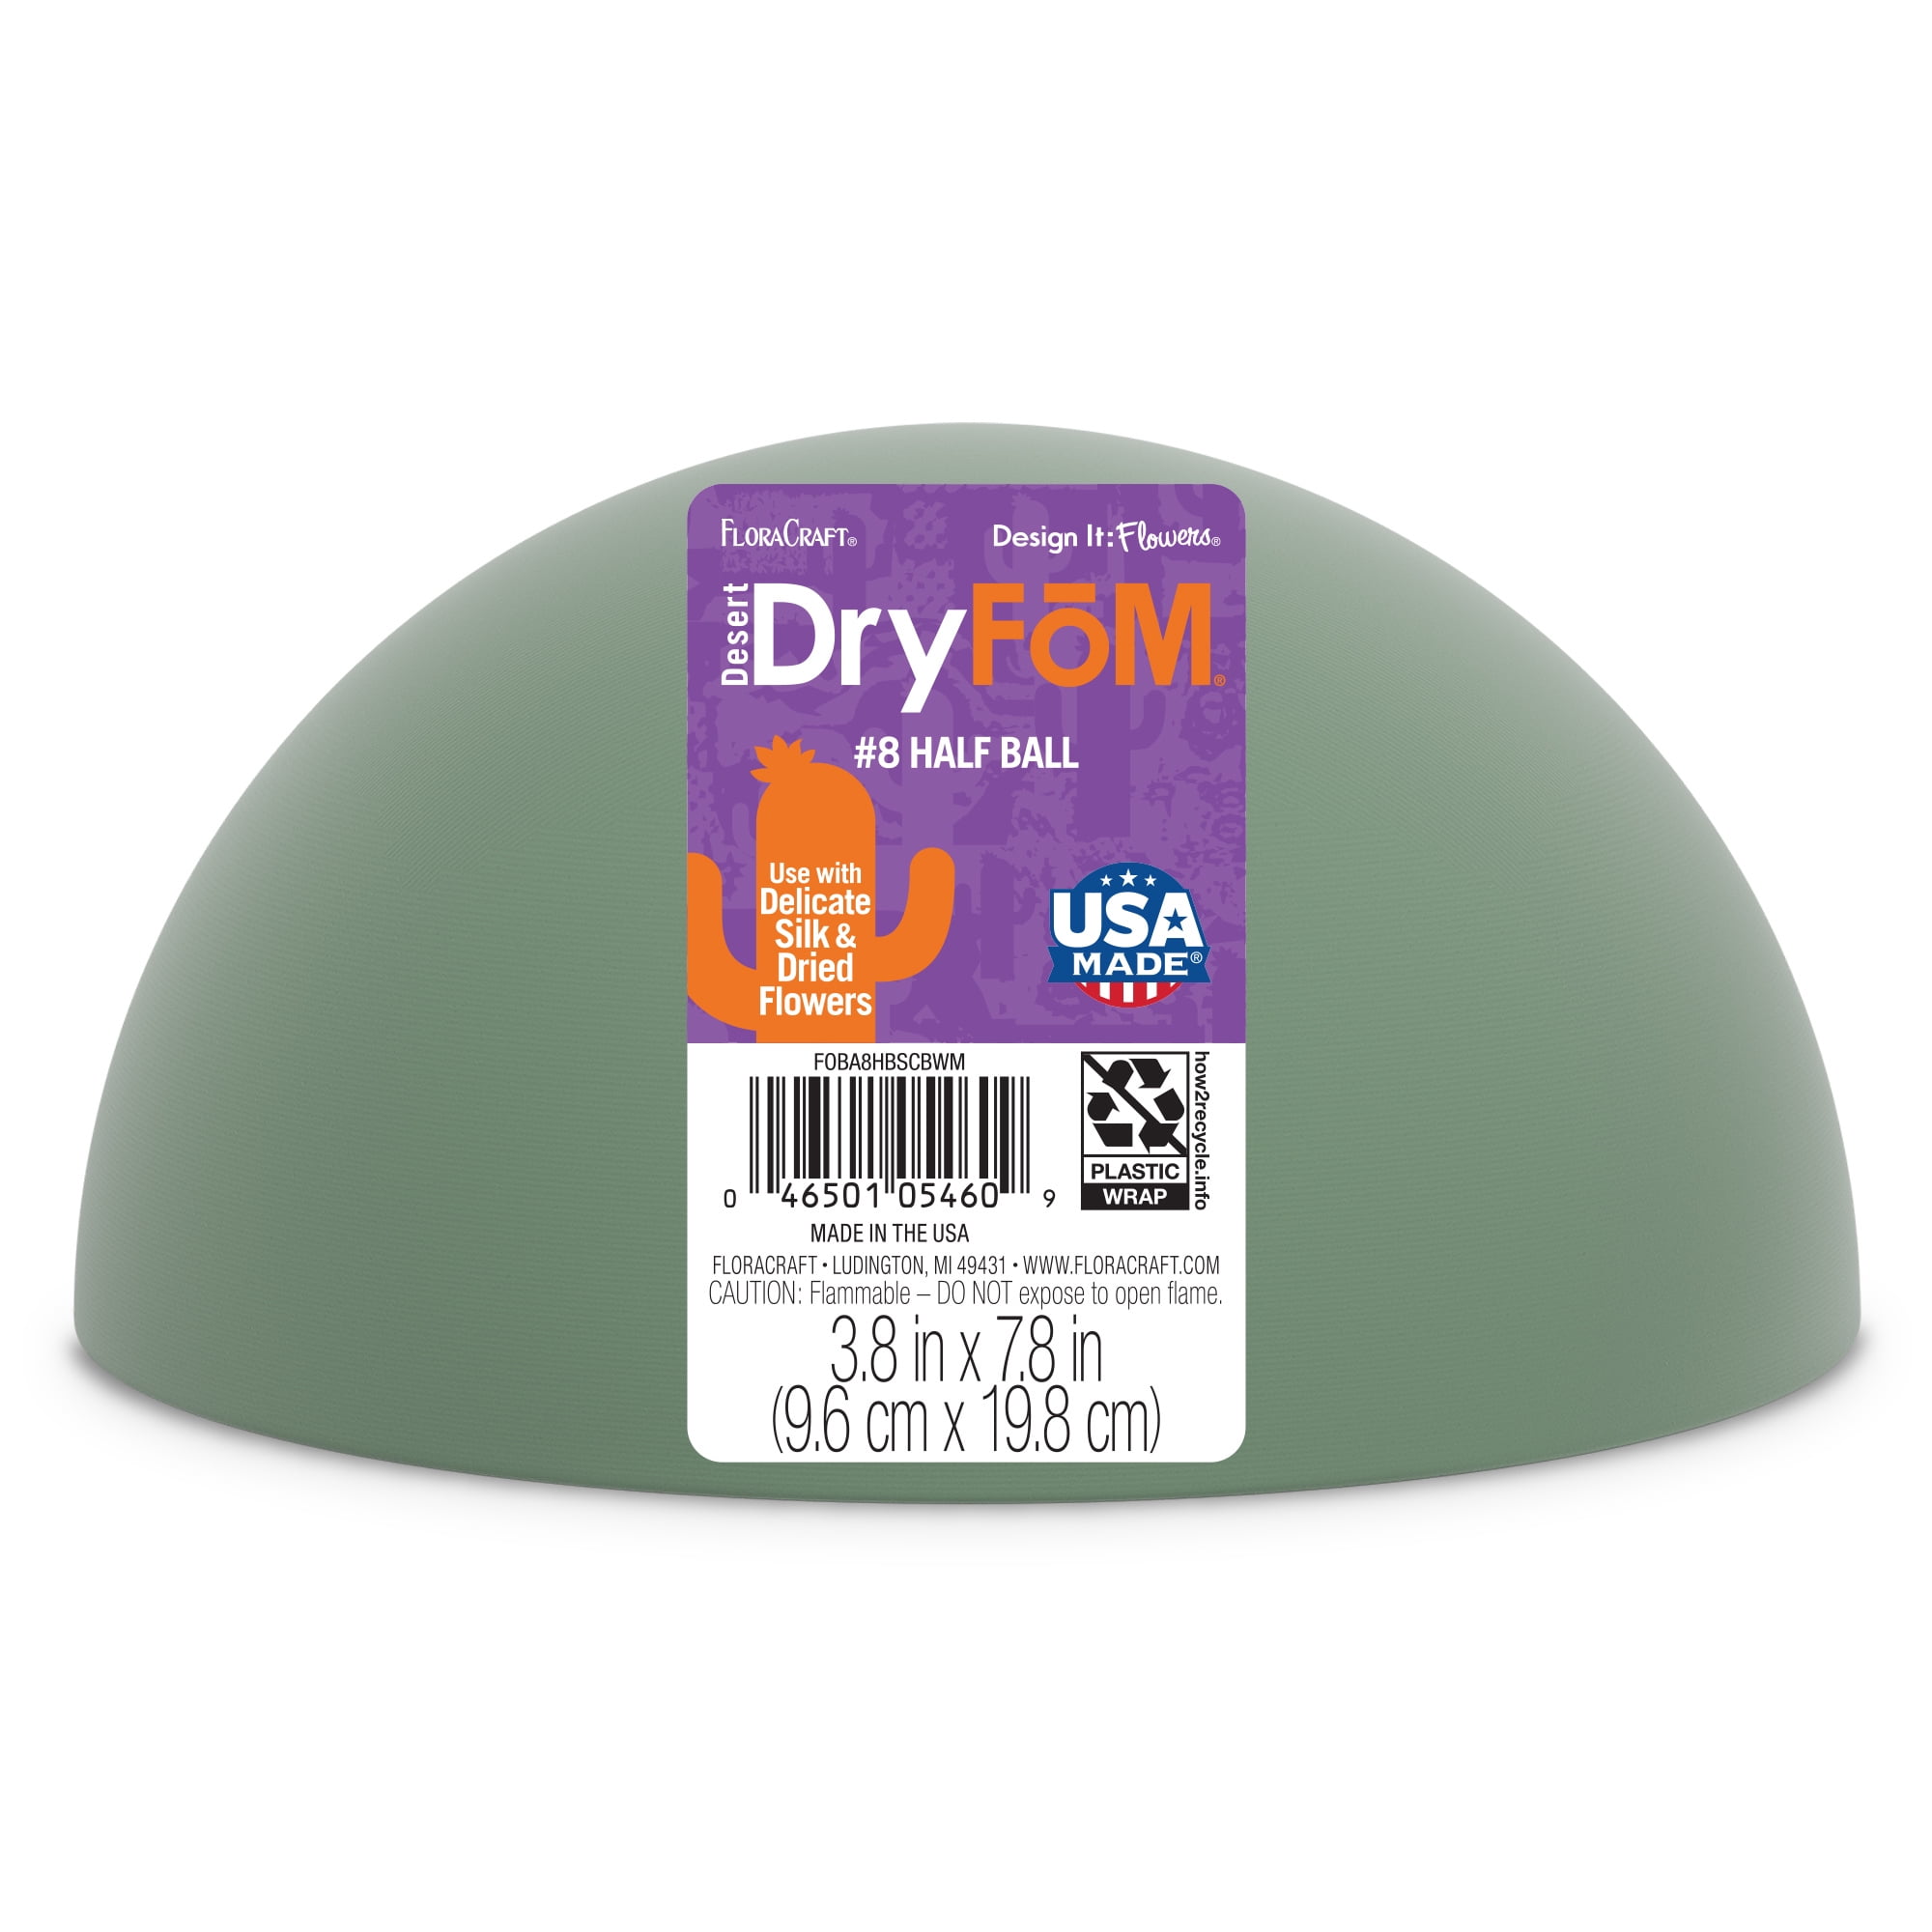 DirectFloral. Dry Foams (Styrofoam)